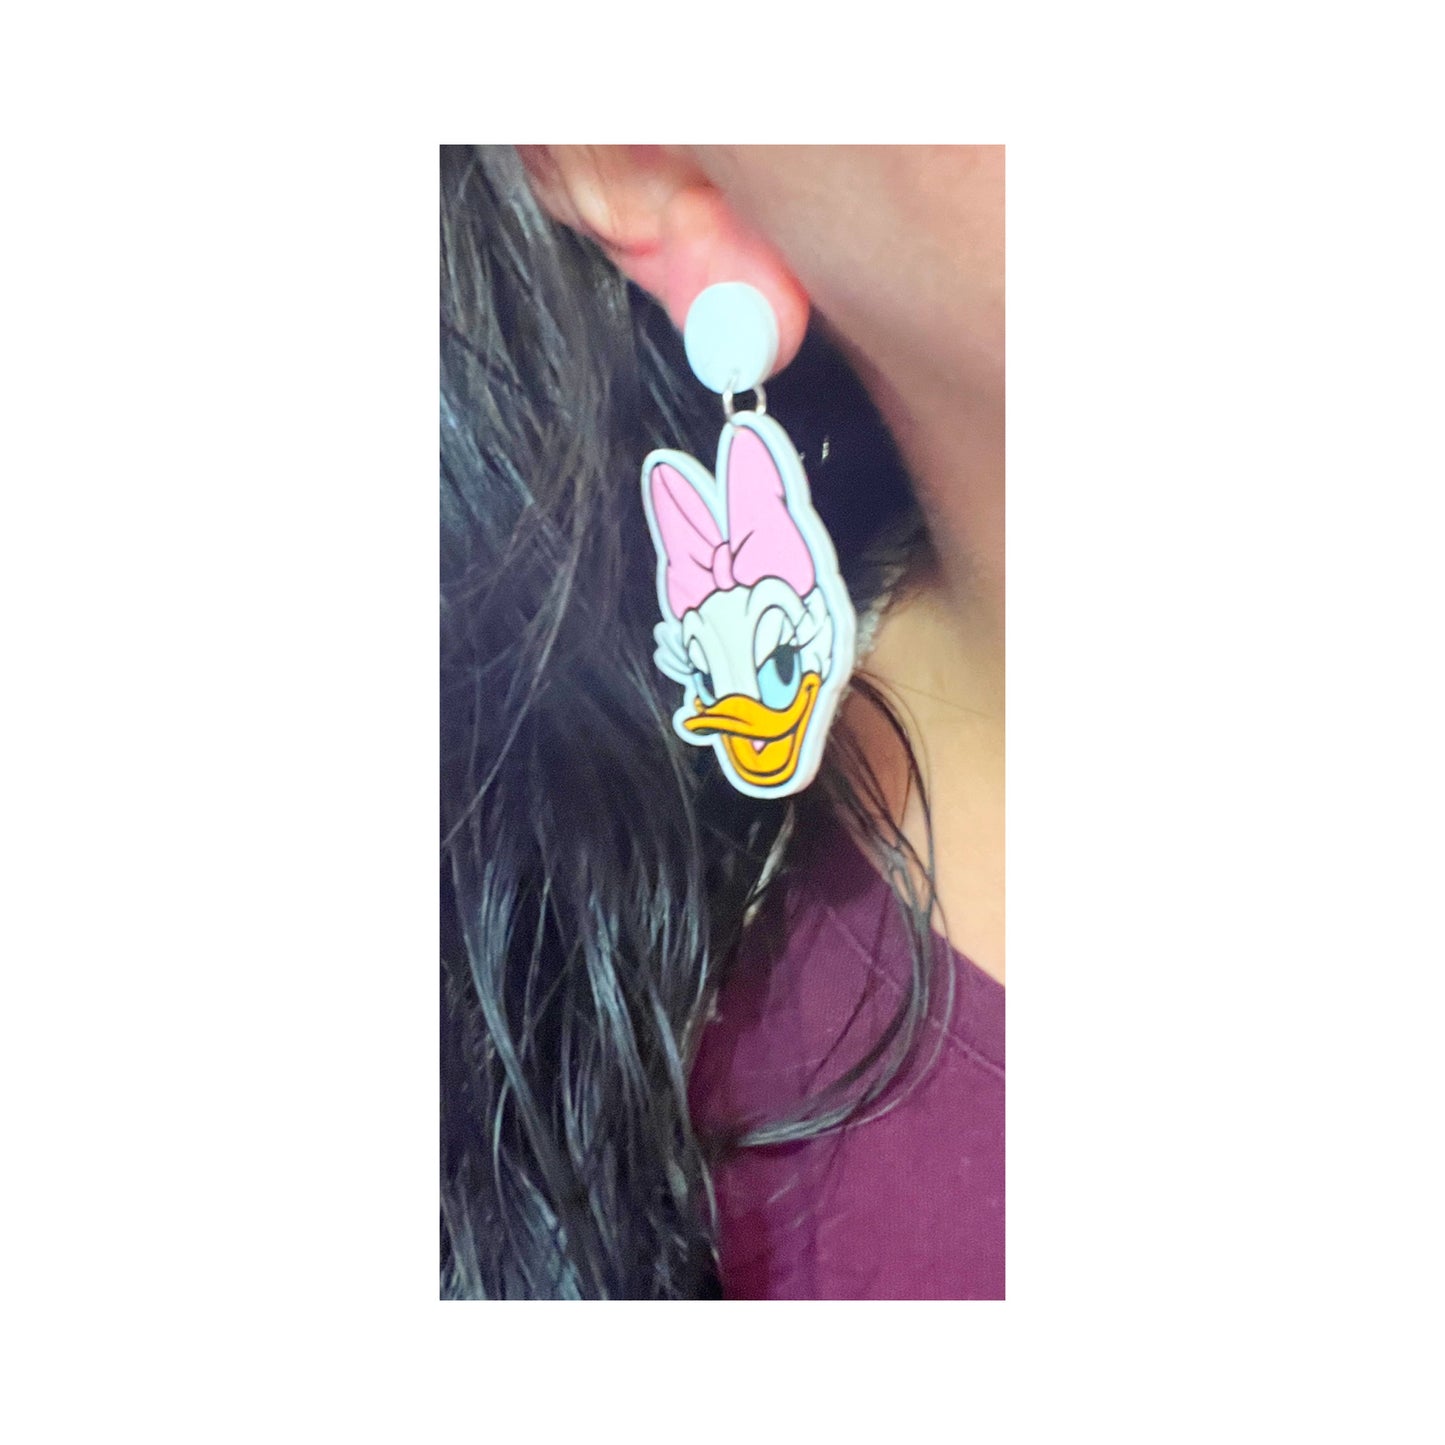 Duck Couple Drop Earrings